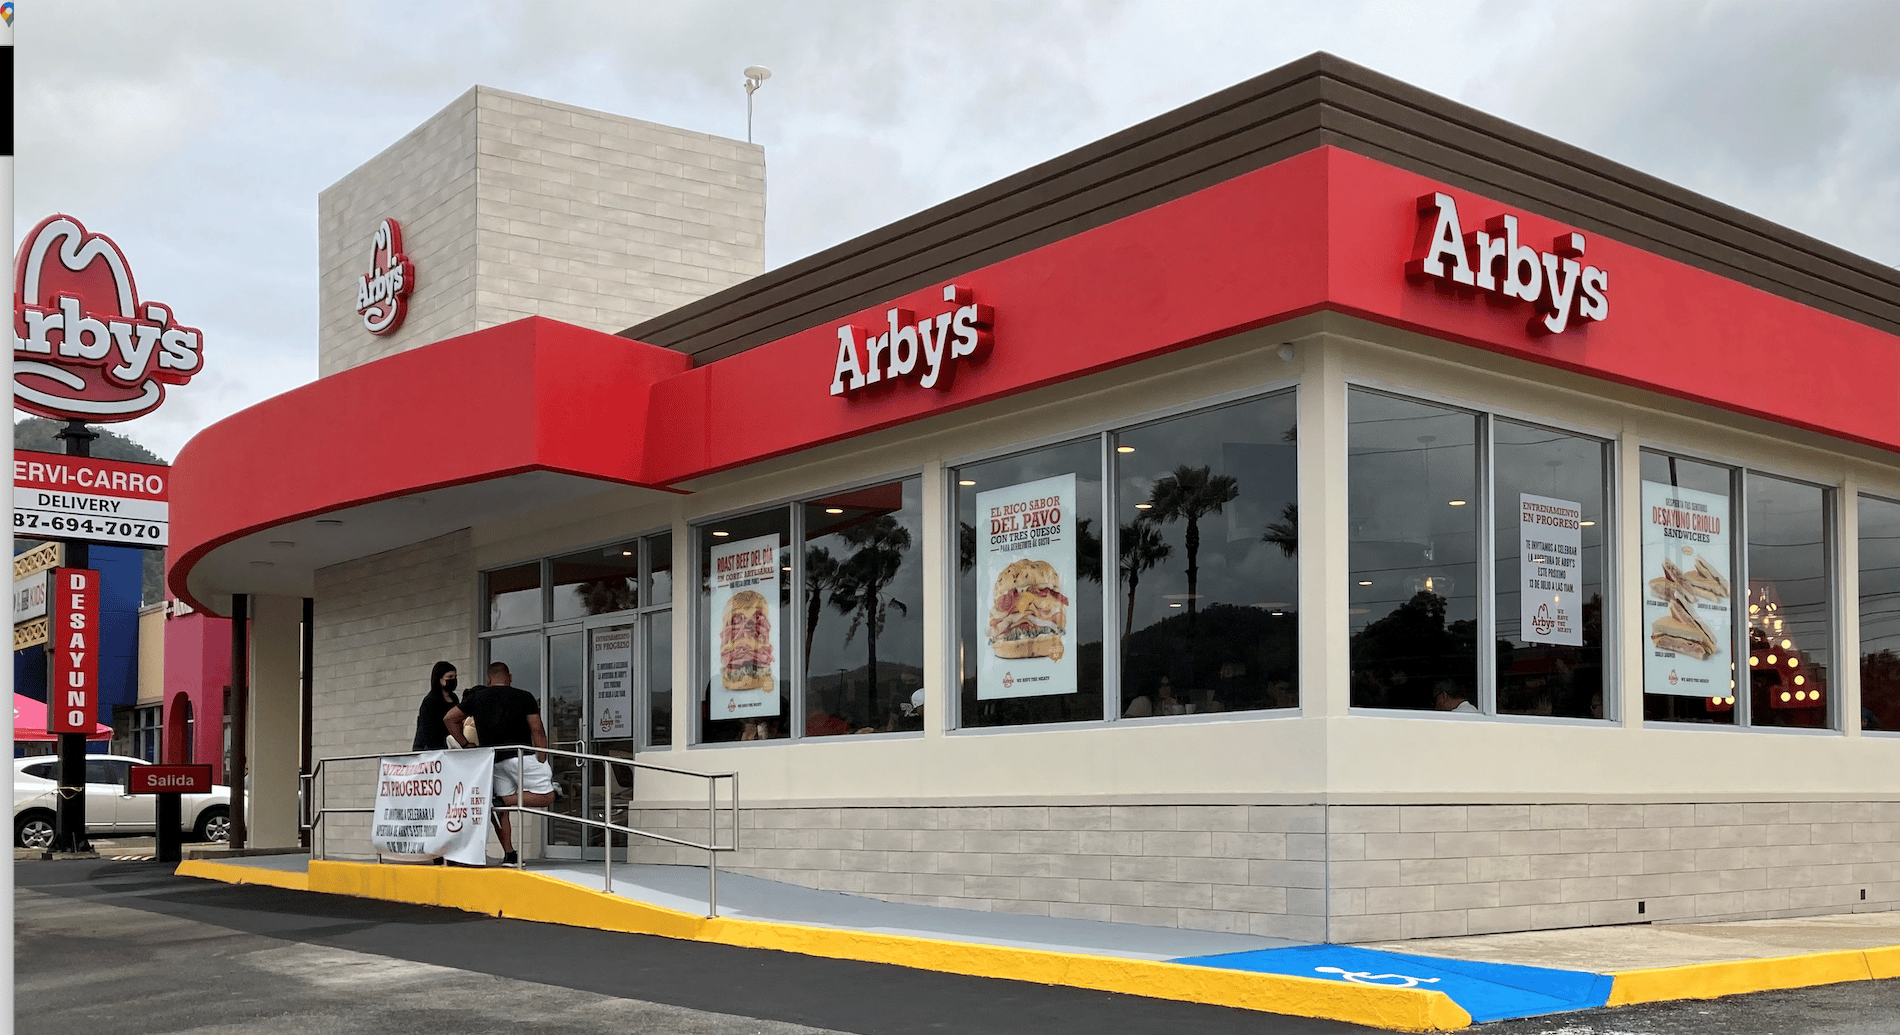 Cadena de restaurantes Arby’s anuncia su arribo a Costa Rica con un primer local en Curridabat